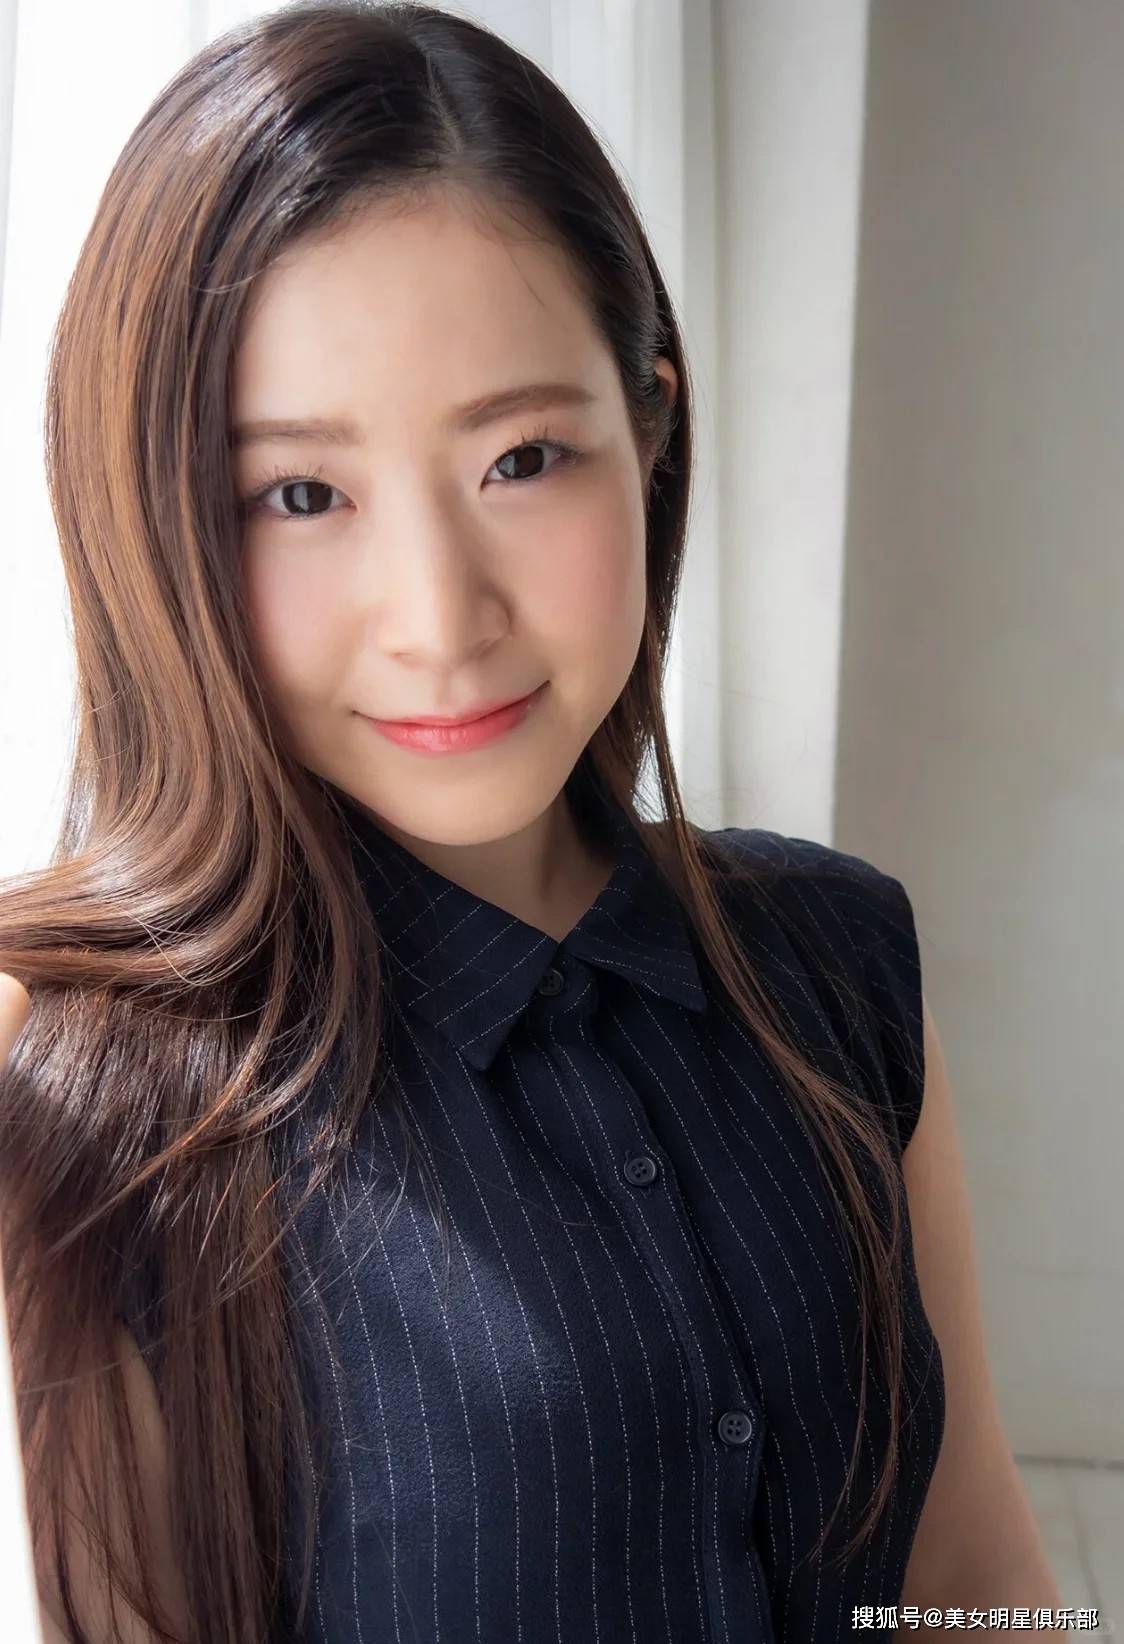 25岁沙月惠奈,清纯无垢甜美性感!